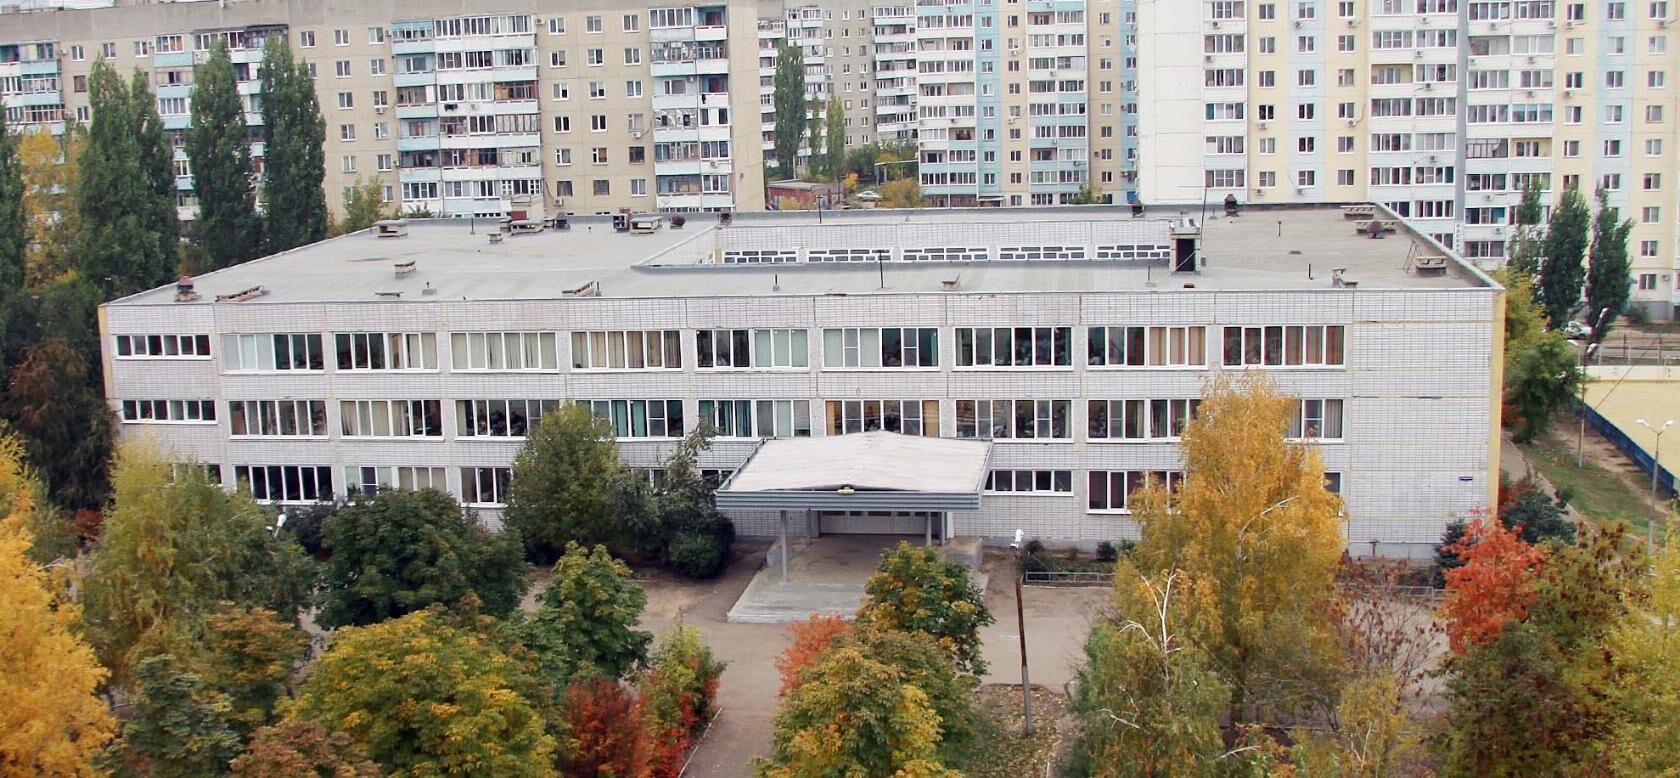 Фото основного здания школы сверху